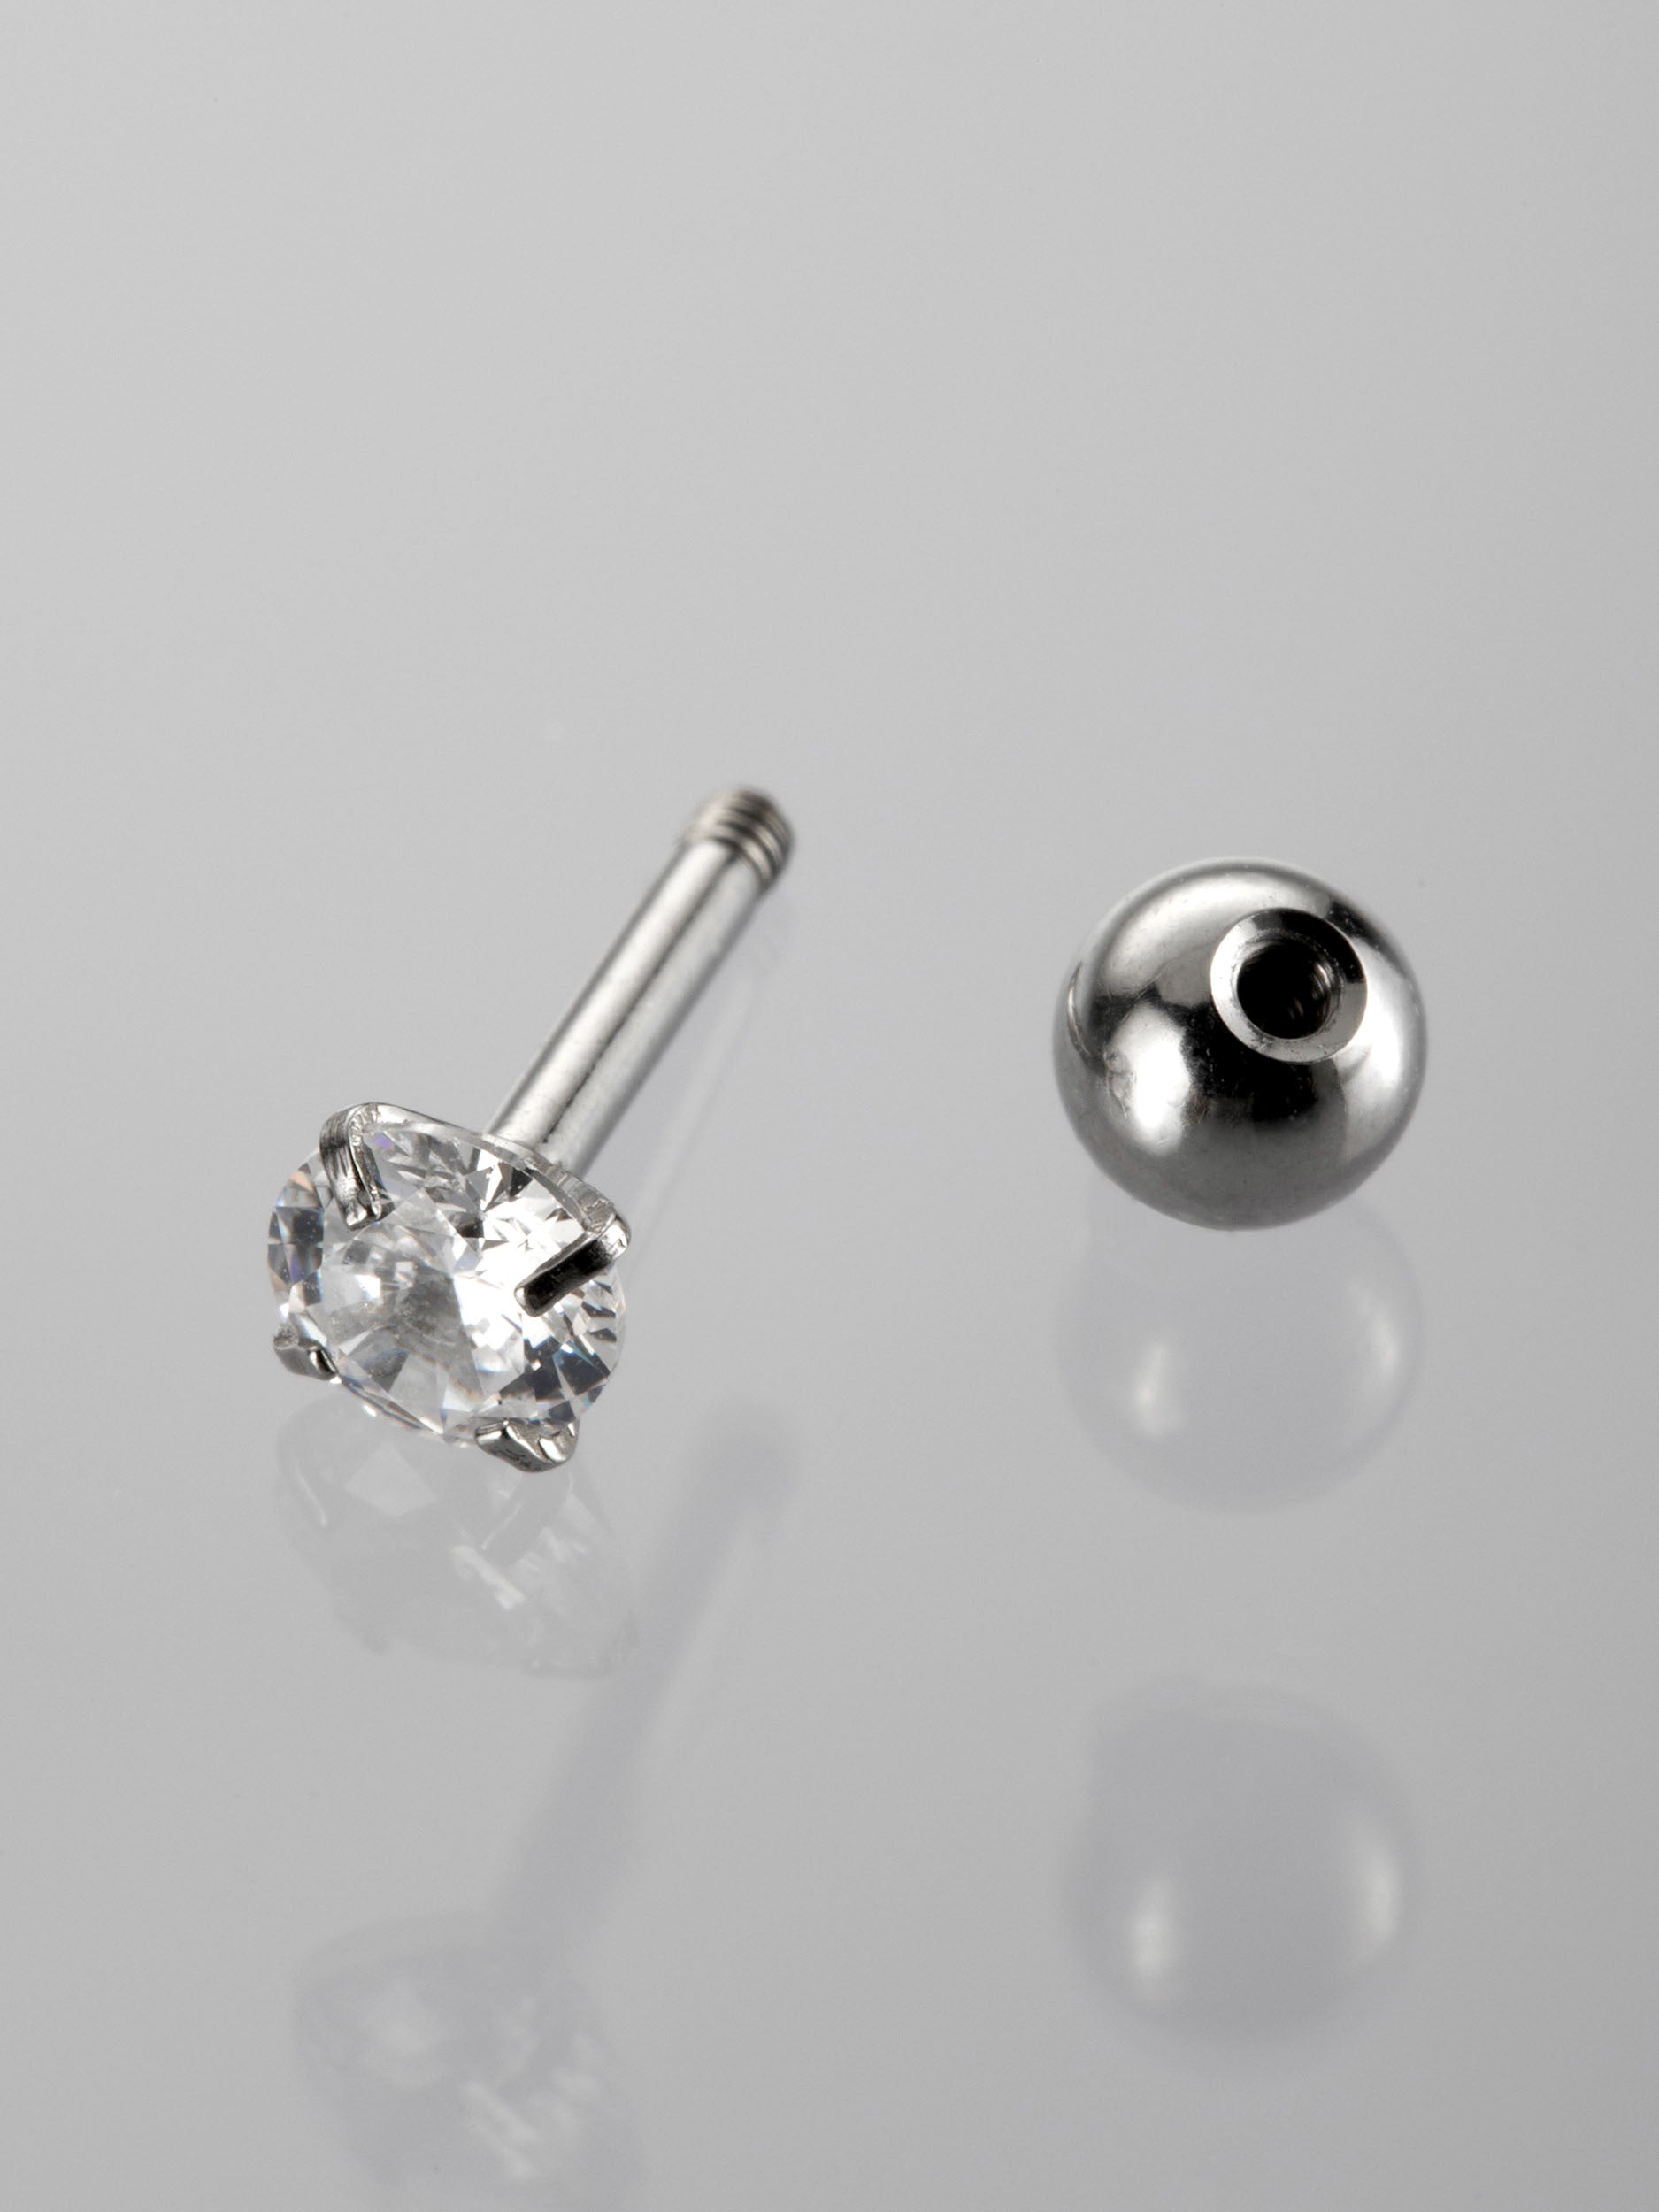 Činka piercing do ucha s kulatým čirým krystalem z chirurgické oceli VB0036-07